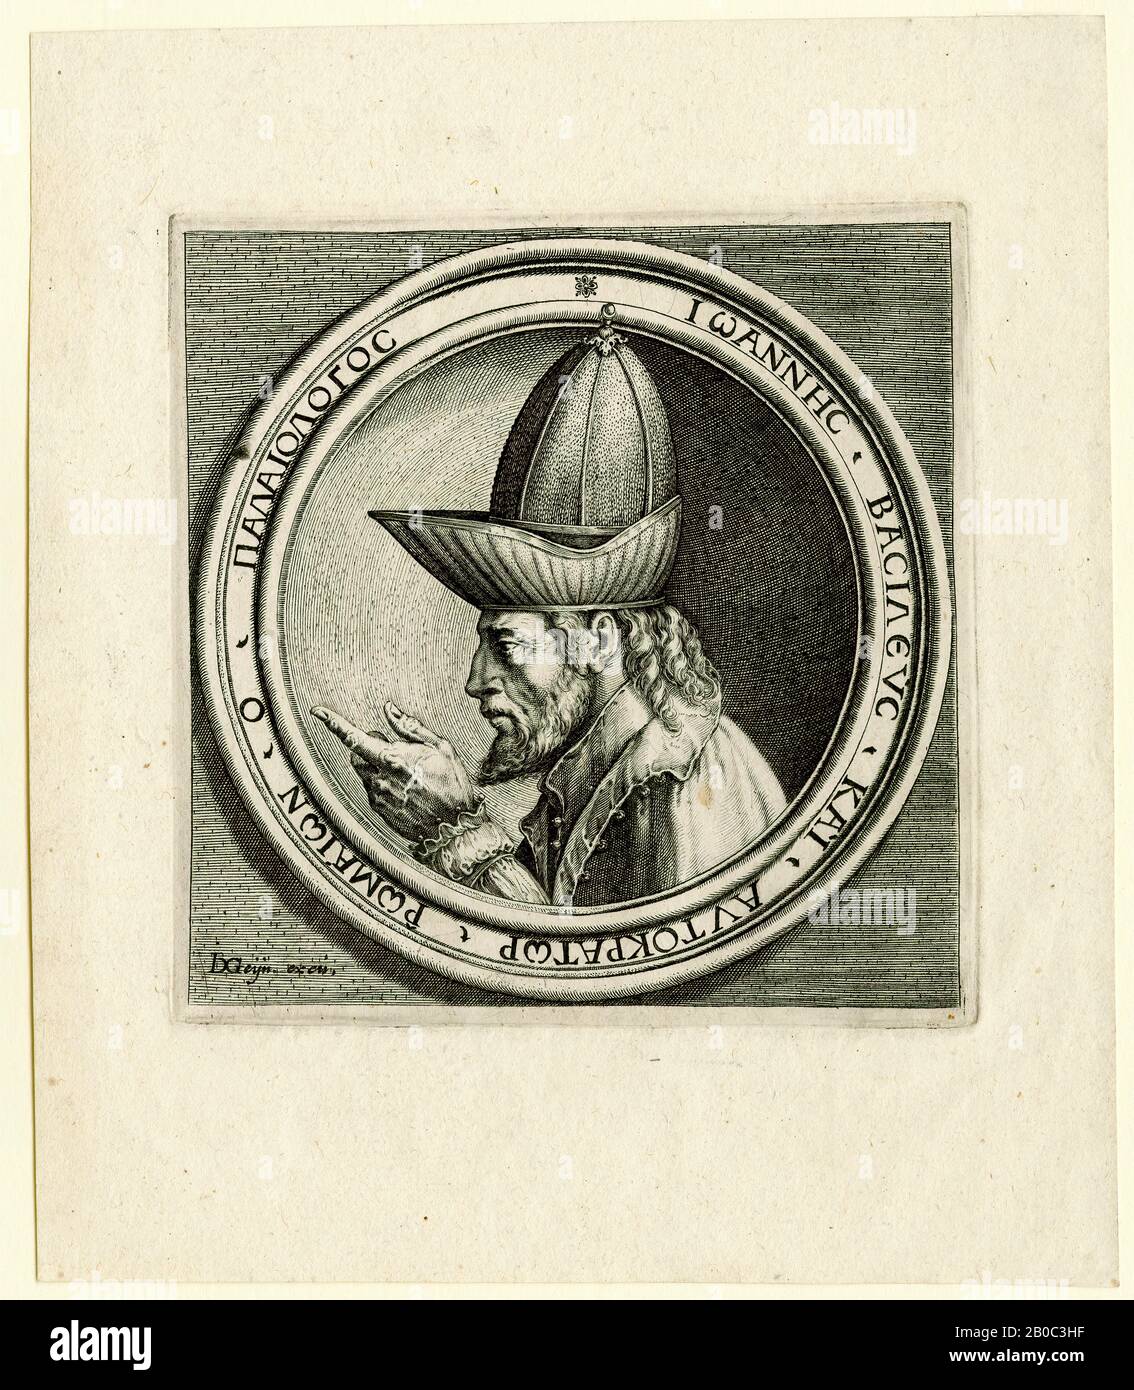 Jacques de Gheyn, Johannes VIII. Paleologus (Johannes VII. Paleologus), CA. 1595, Gravur auf cremefarbenes Papier, 6 3/4 Zoll x 5 7/8 Zoll (17,15 x 14,92 cm) gehörte der niederländische Maler und Graveur Jacques de Gheyn zu einer Gruppe von Künstlern, die das übertriebene und übermäßig künstliche formale Vokabular des niederländischen Mannerismus überwand, indem er einen naturkundlichen Stil auf der Grundlage der Beobachtung übernahm. De Gheyns Gravuren von Porträtmedaillen, wie dieses Beispiel von Paleologus, zeigen sein Interesse am Naturalismus und zeigen seine Fähigkeit, die Proportionen der Gesichtszüge seiner Sitter genau zu reproduzieren. De Gheyns en Stockfoto